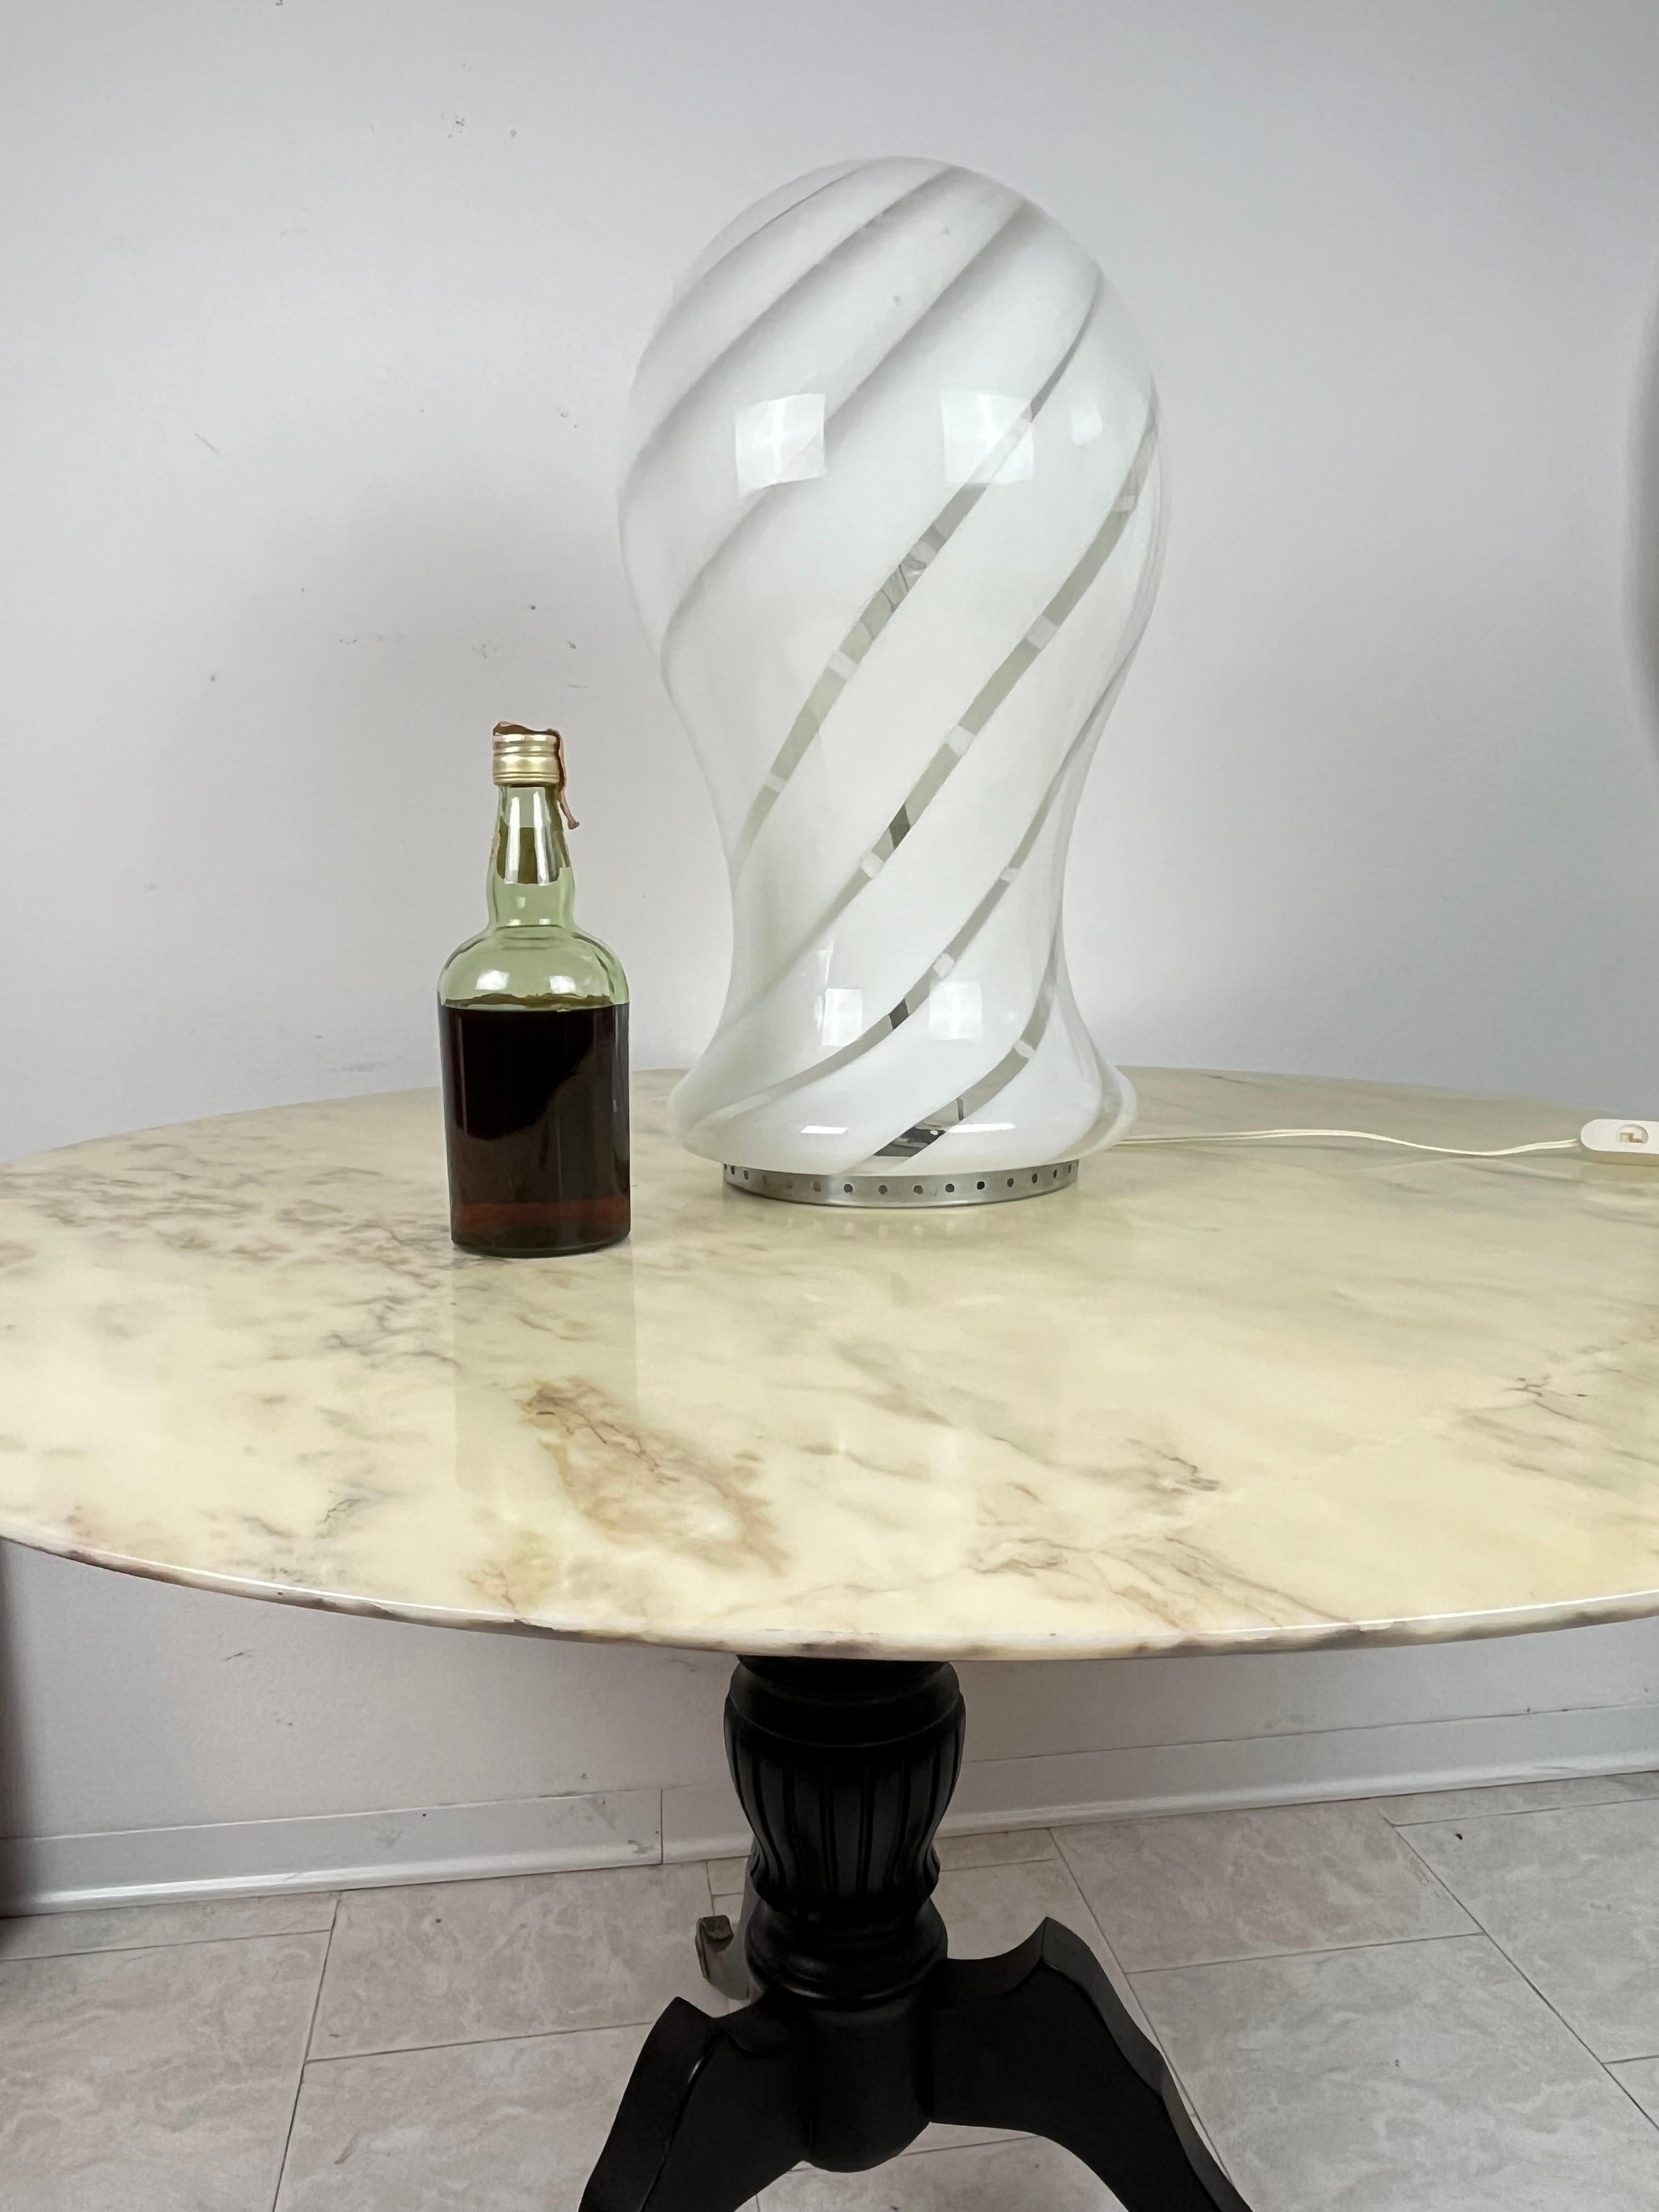 Grande lampe de table en verre de Murano, fabriquée en Italie, années 1970
Intacte et fonctionnelle, 55 cm de haut.
Fabrication artisanale, achetée à Venise.

Nous garantissons un emballage adéquat et nous expédions par DHL, en assurant le contenu